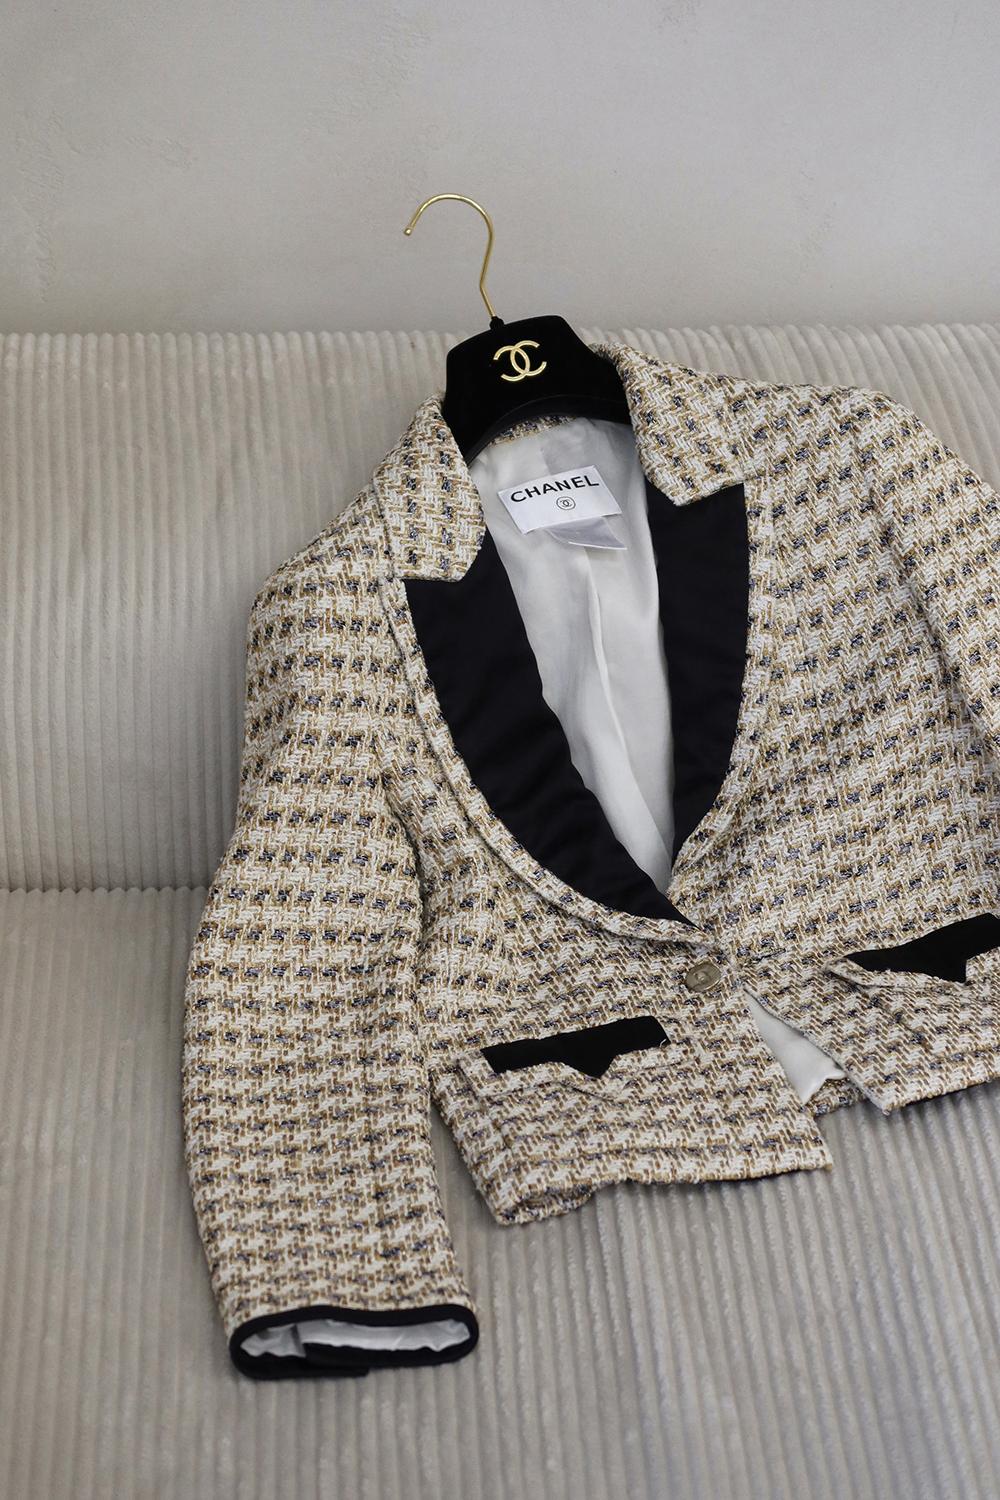 Veste Chanel en tweed beige et métallisé avec revers noirs contrastés.
- Boutons dorés avec logo CC sur le devant et les poignets
- doublure en soie ton sur ton
Taille 38 FR. État : impeccable, n'a été essayé qu'une seule fois.